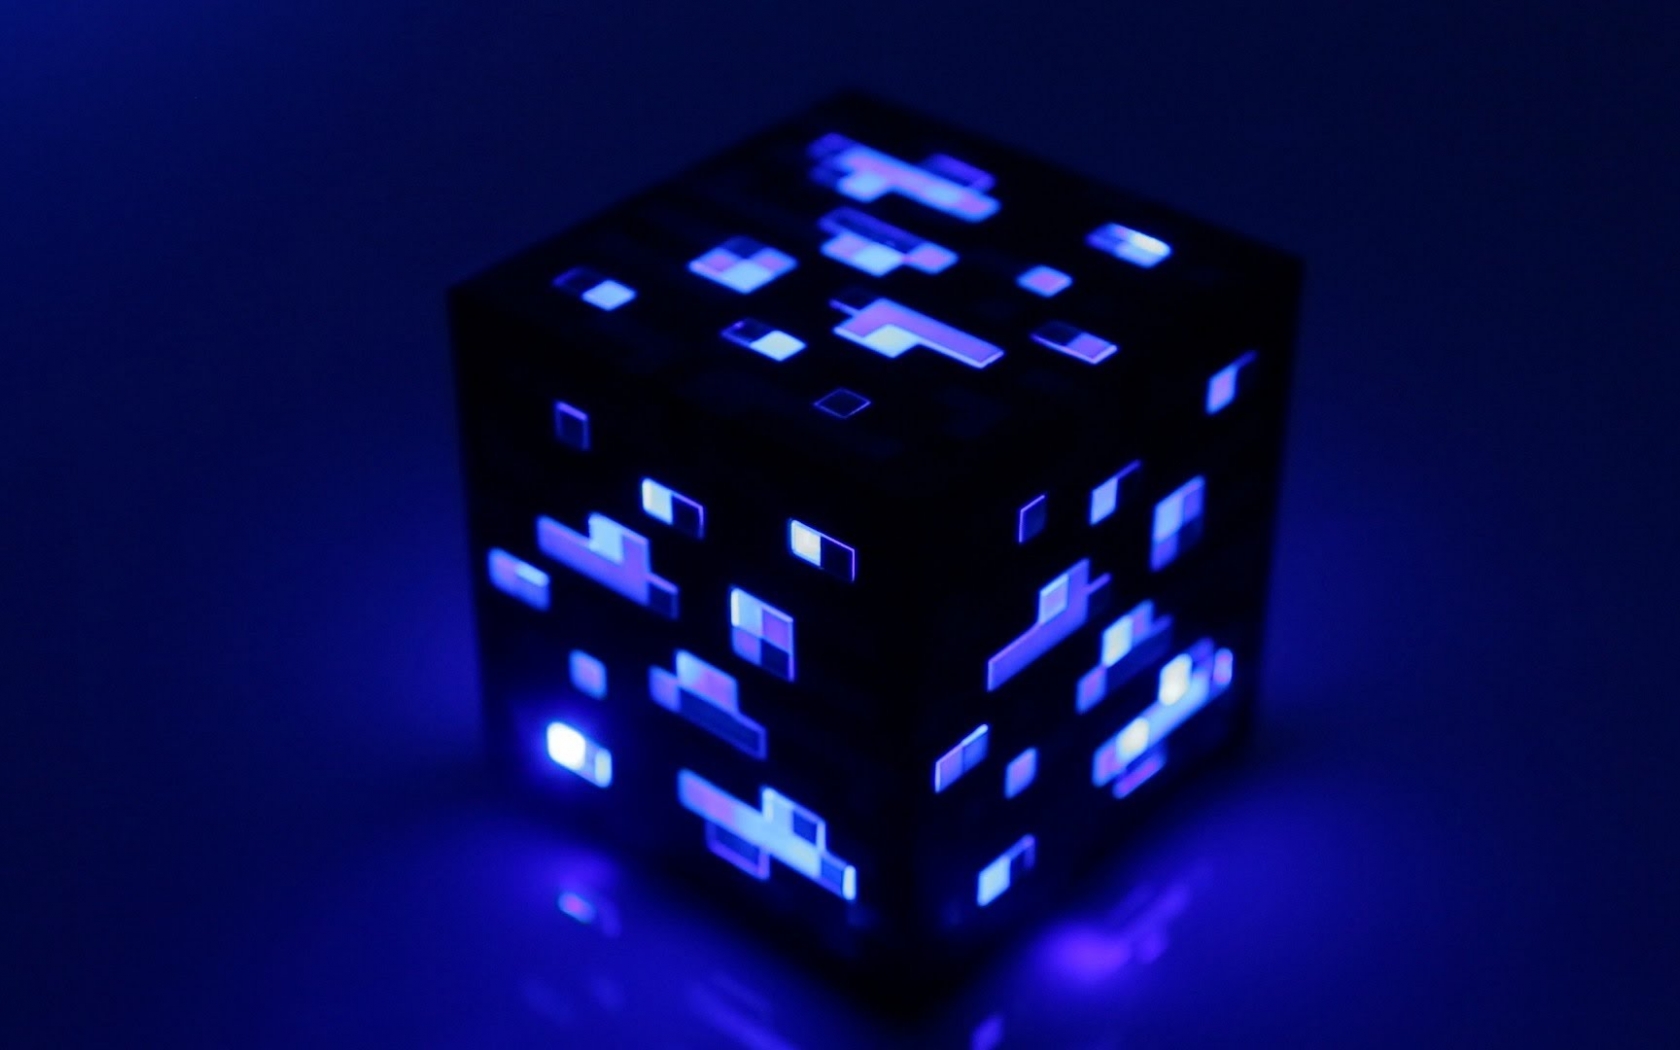 minecraft diamond wallpaper,cobalt blue,blue,games,light,dice